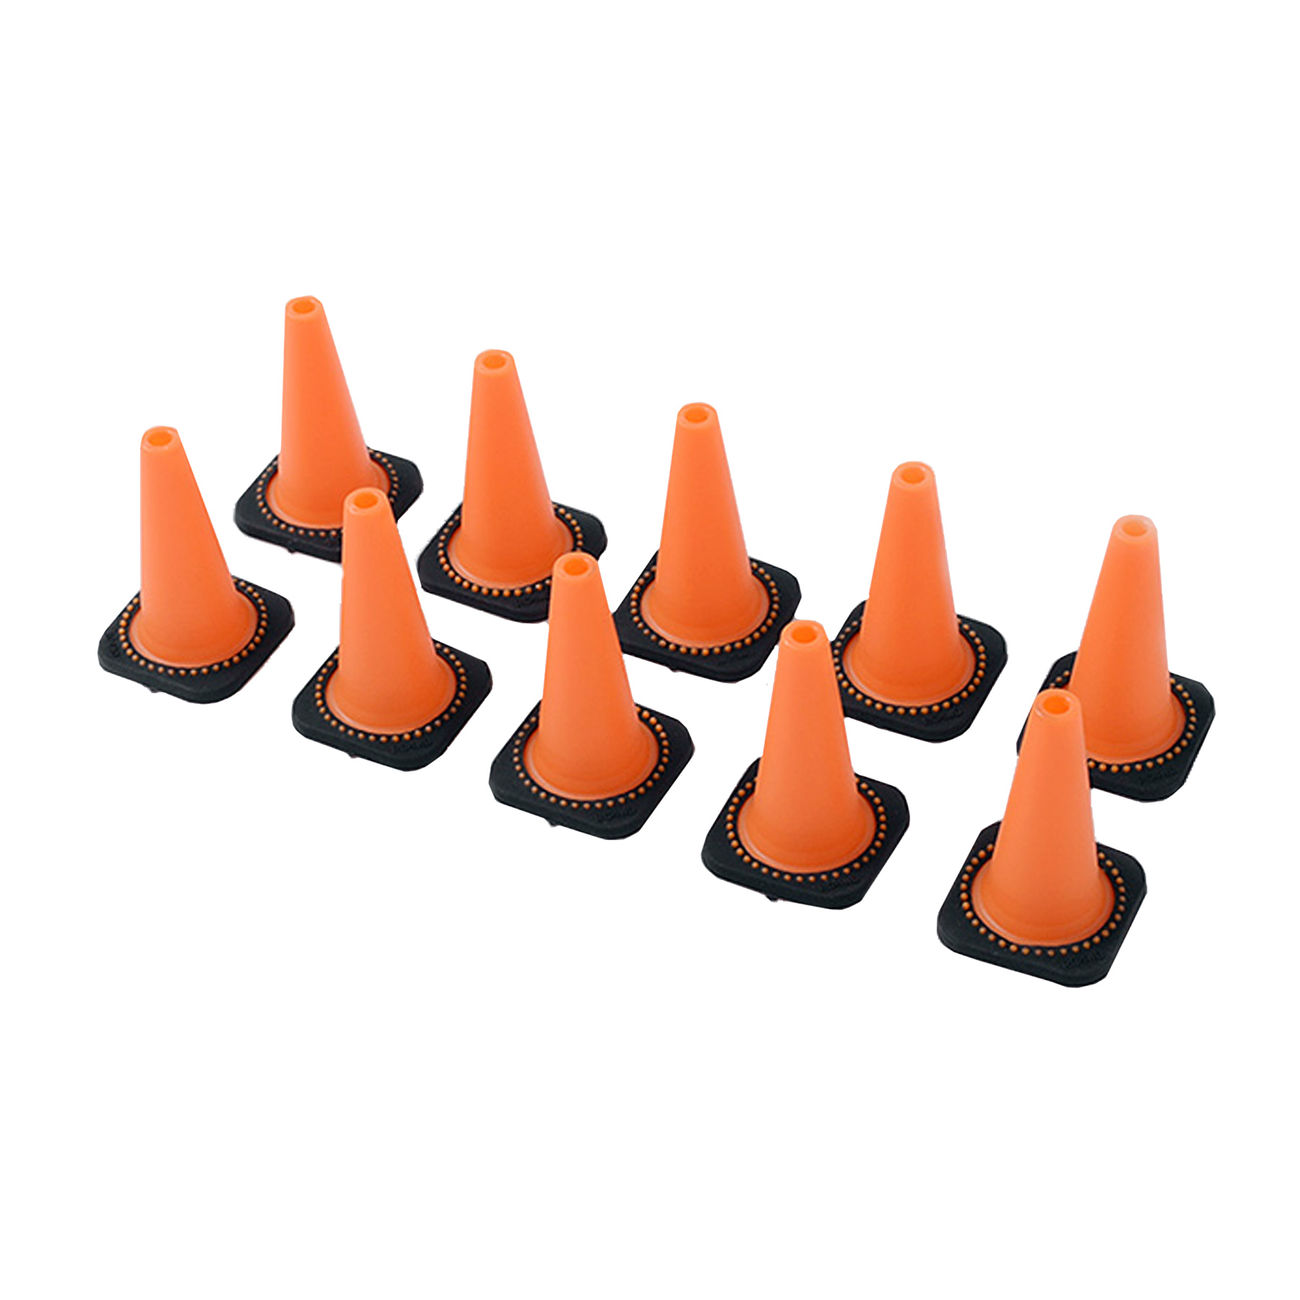 RC4WD 1:10 Verkehrs-Leitkegeln Pylon Set (10 Stück) orange / schwarz Z-S1658